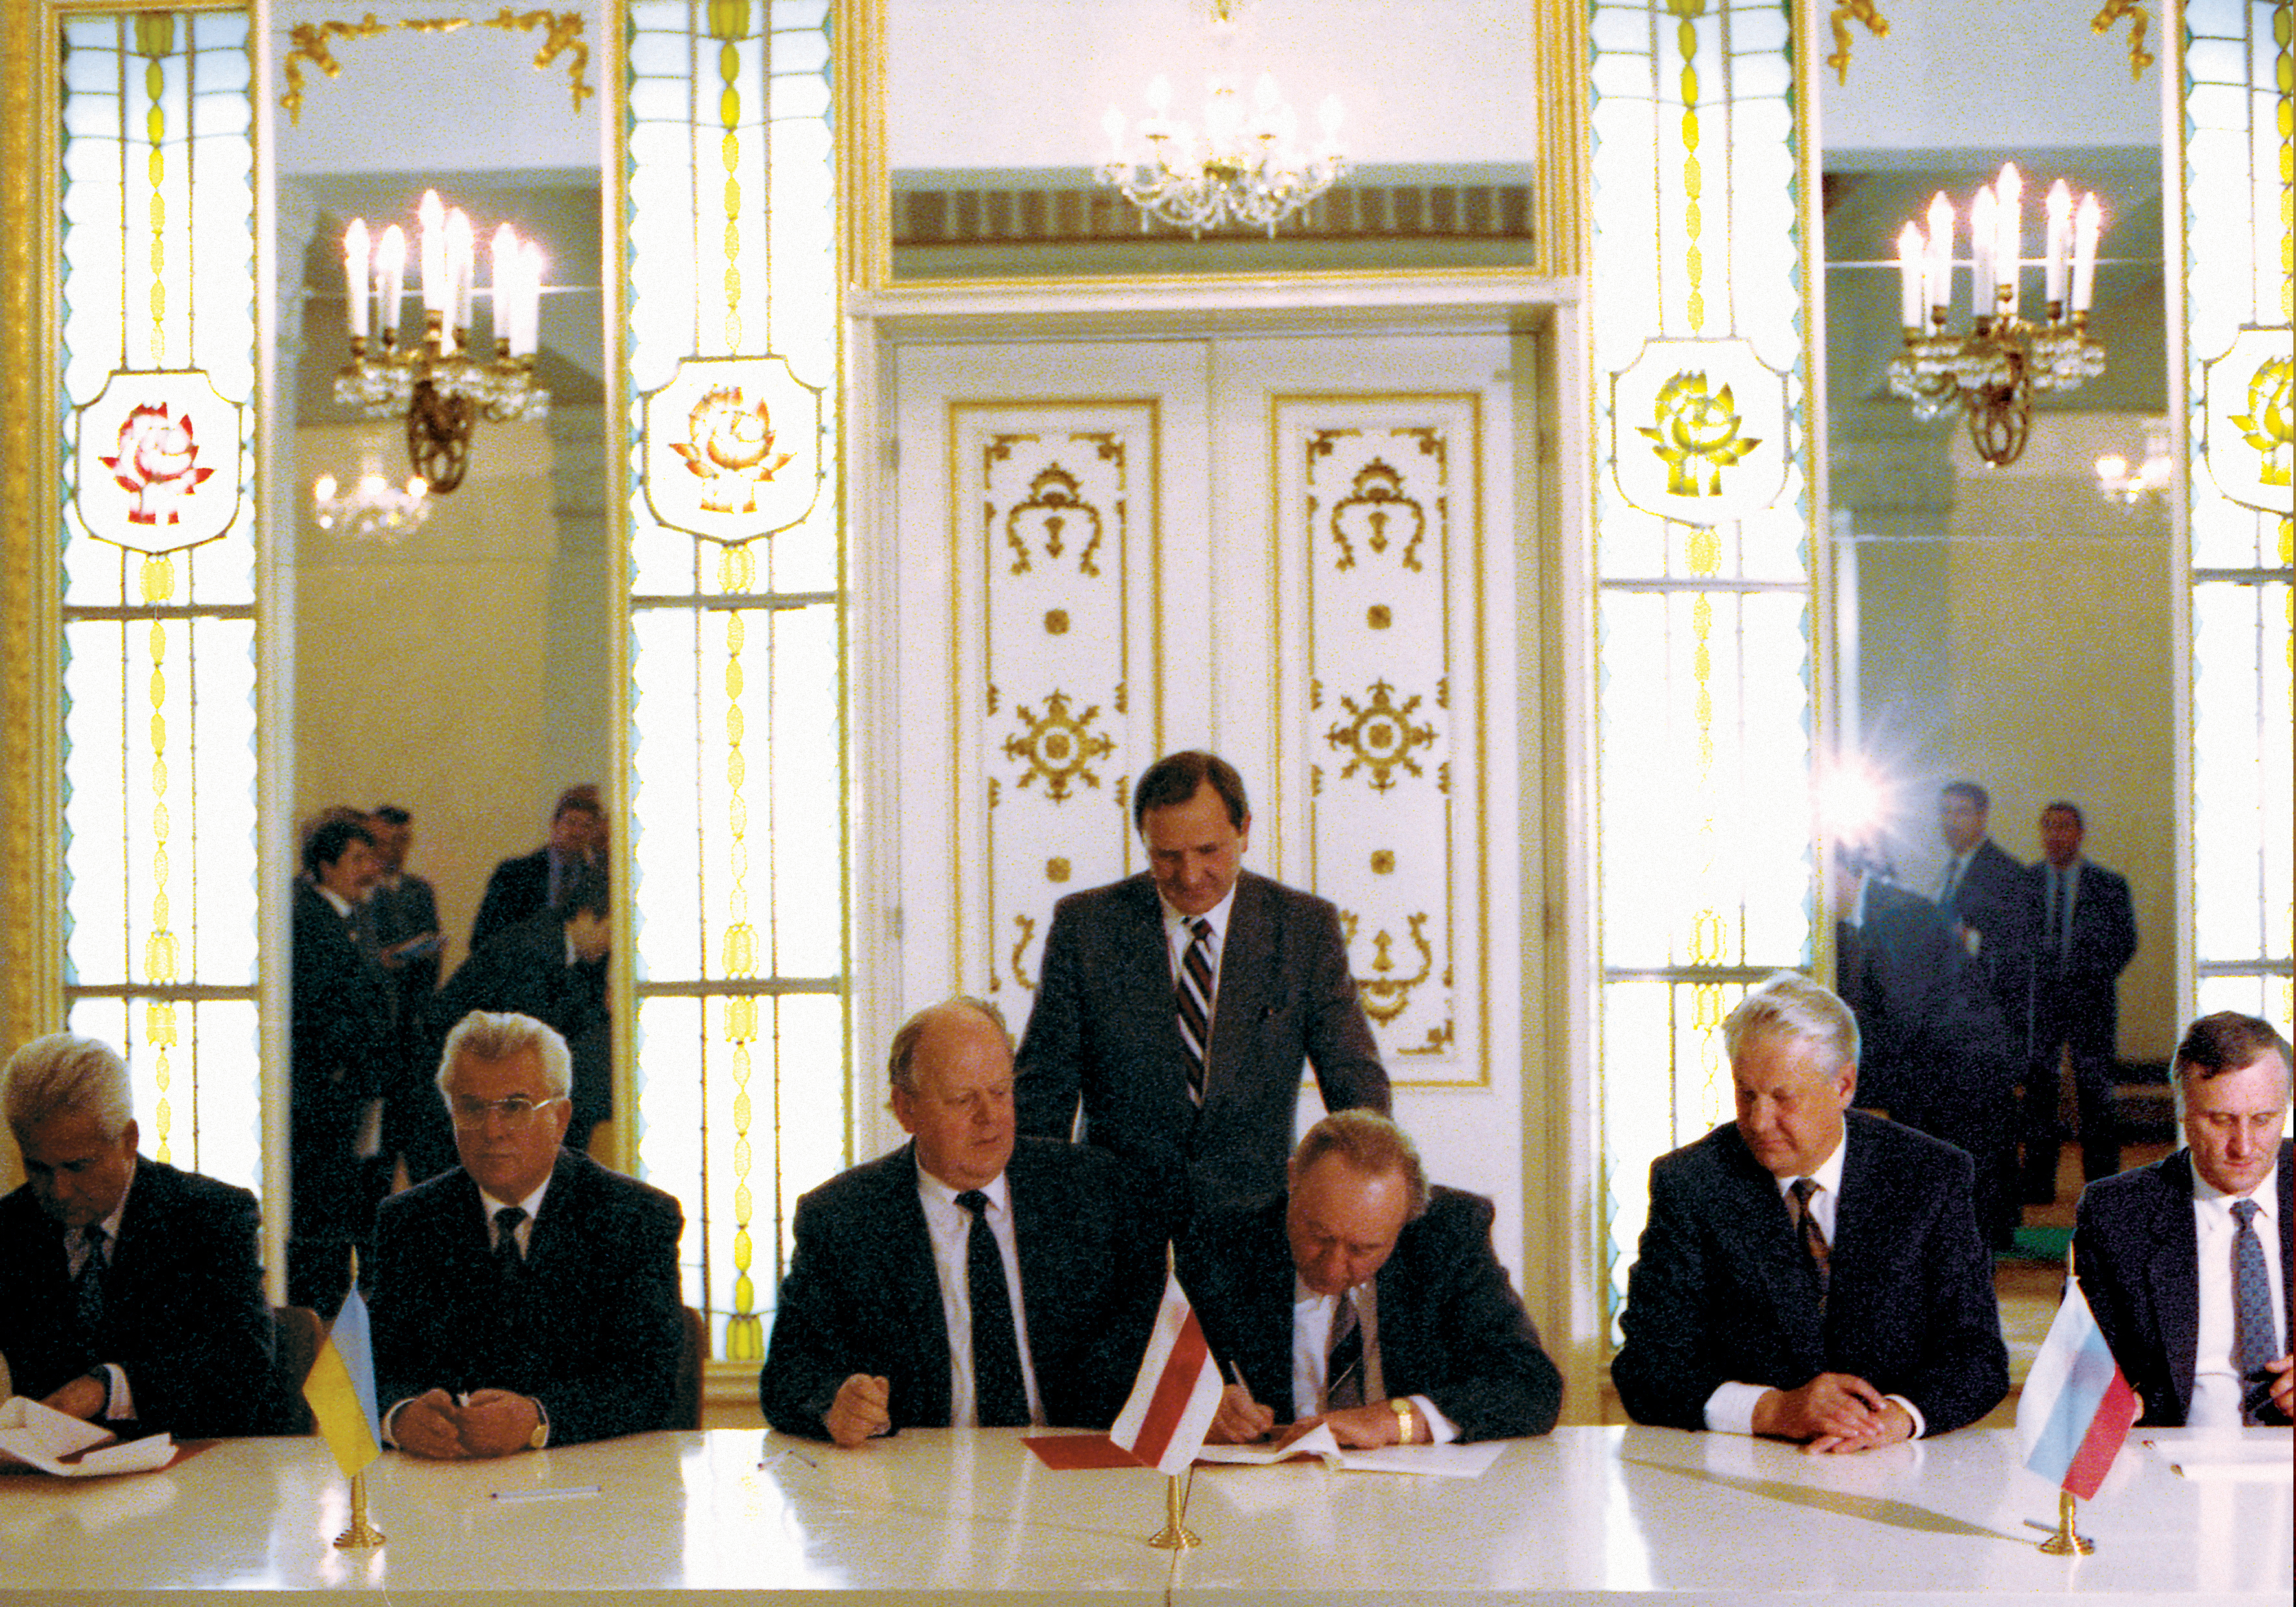 Sovjetunionen avviklet med et pennestrøk: Slik var Gorbatsjovs siste uker som president